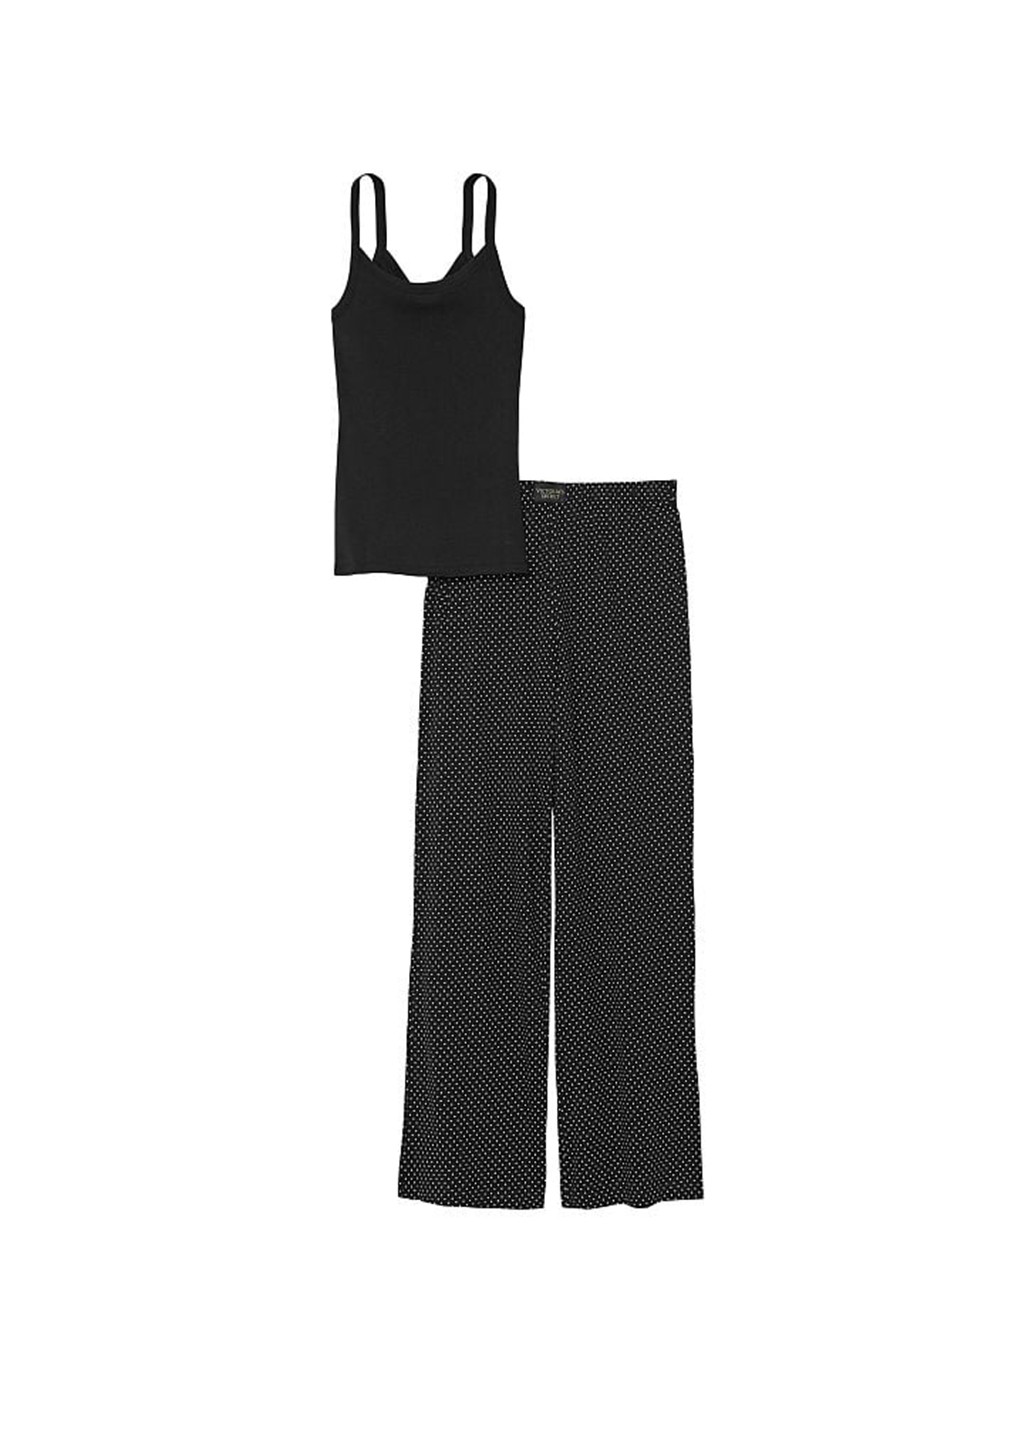 Черная всесезон пижама (майка, брюки) майка + брюки Victoria's Secret